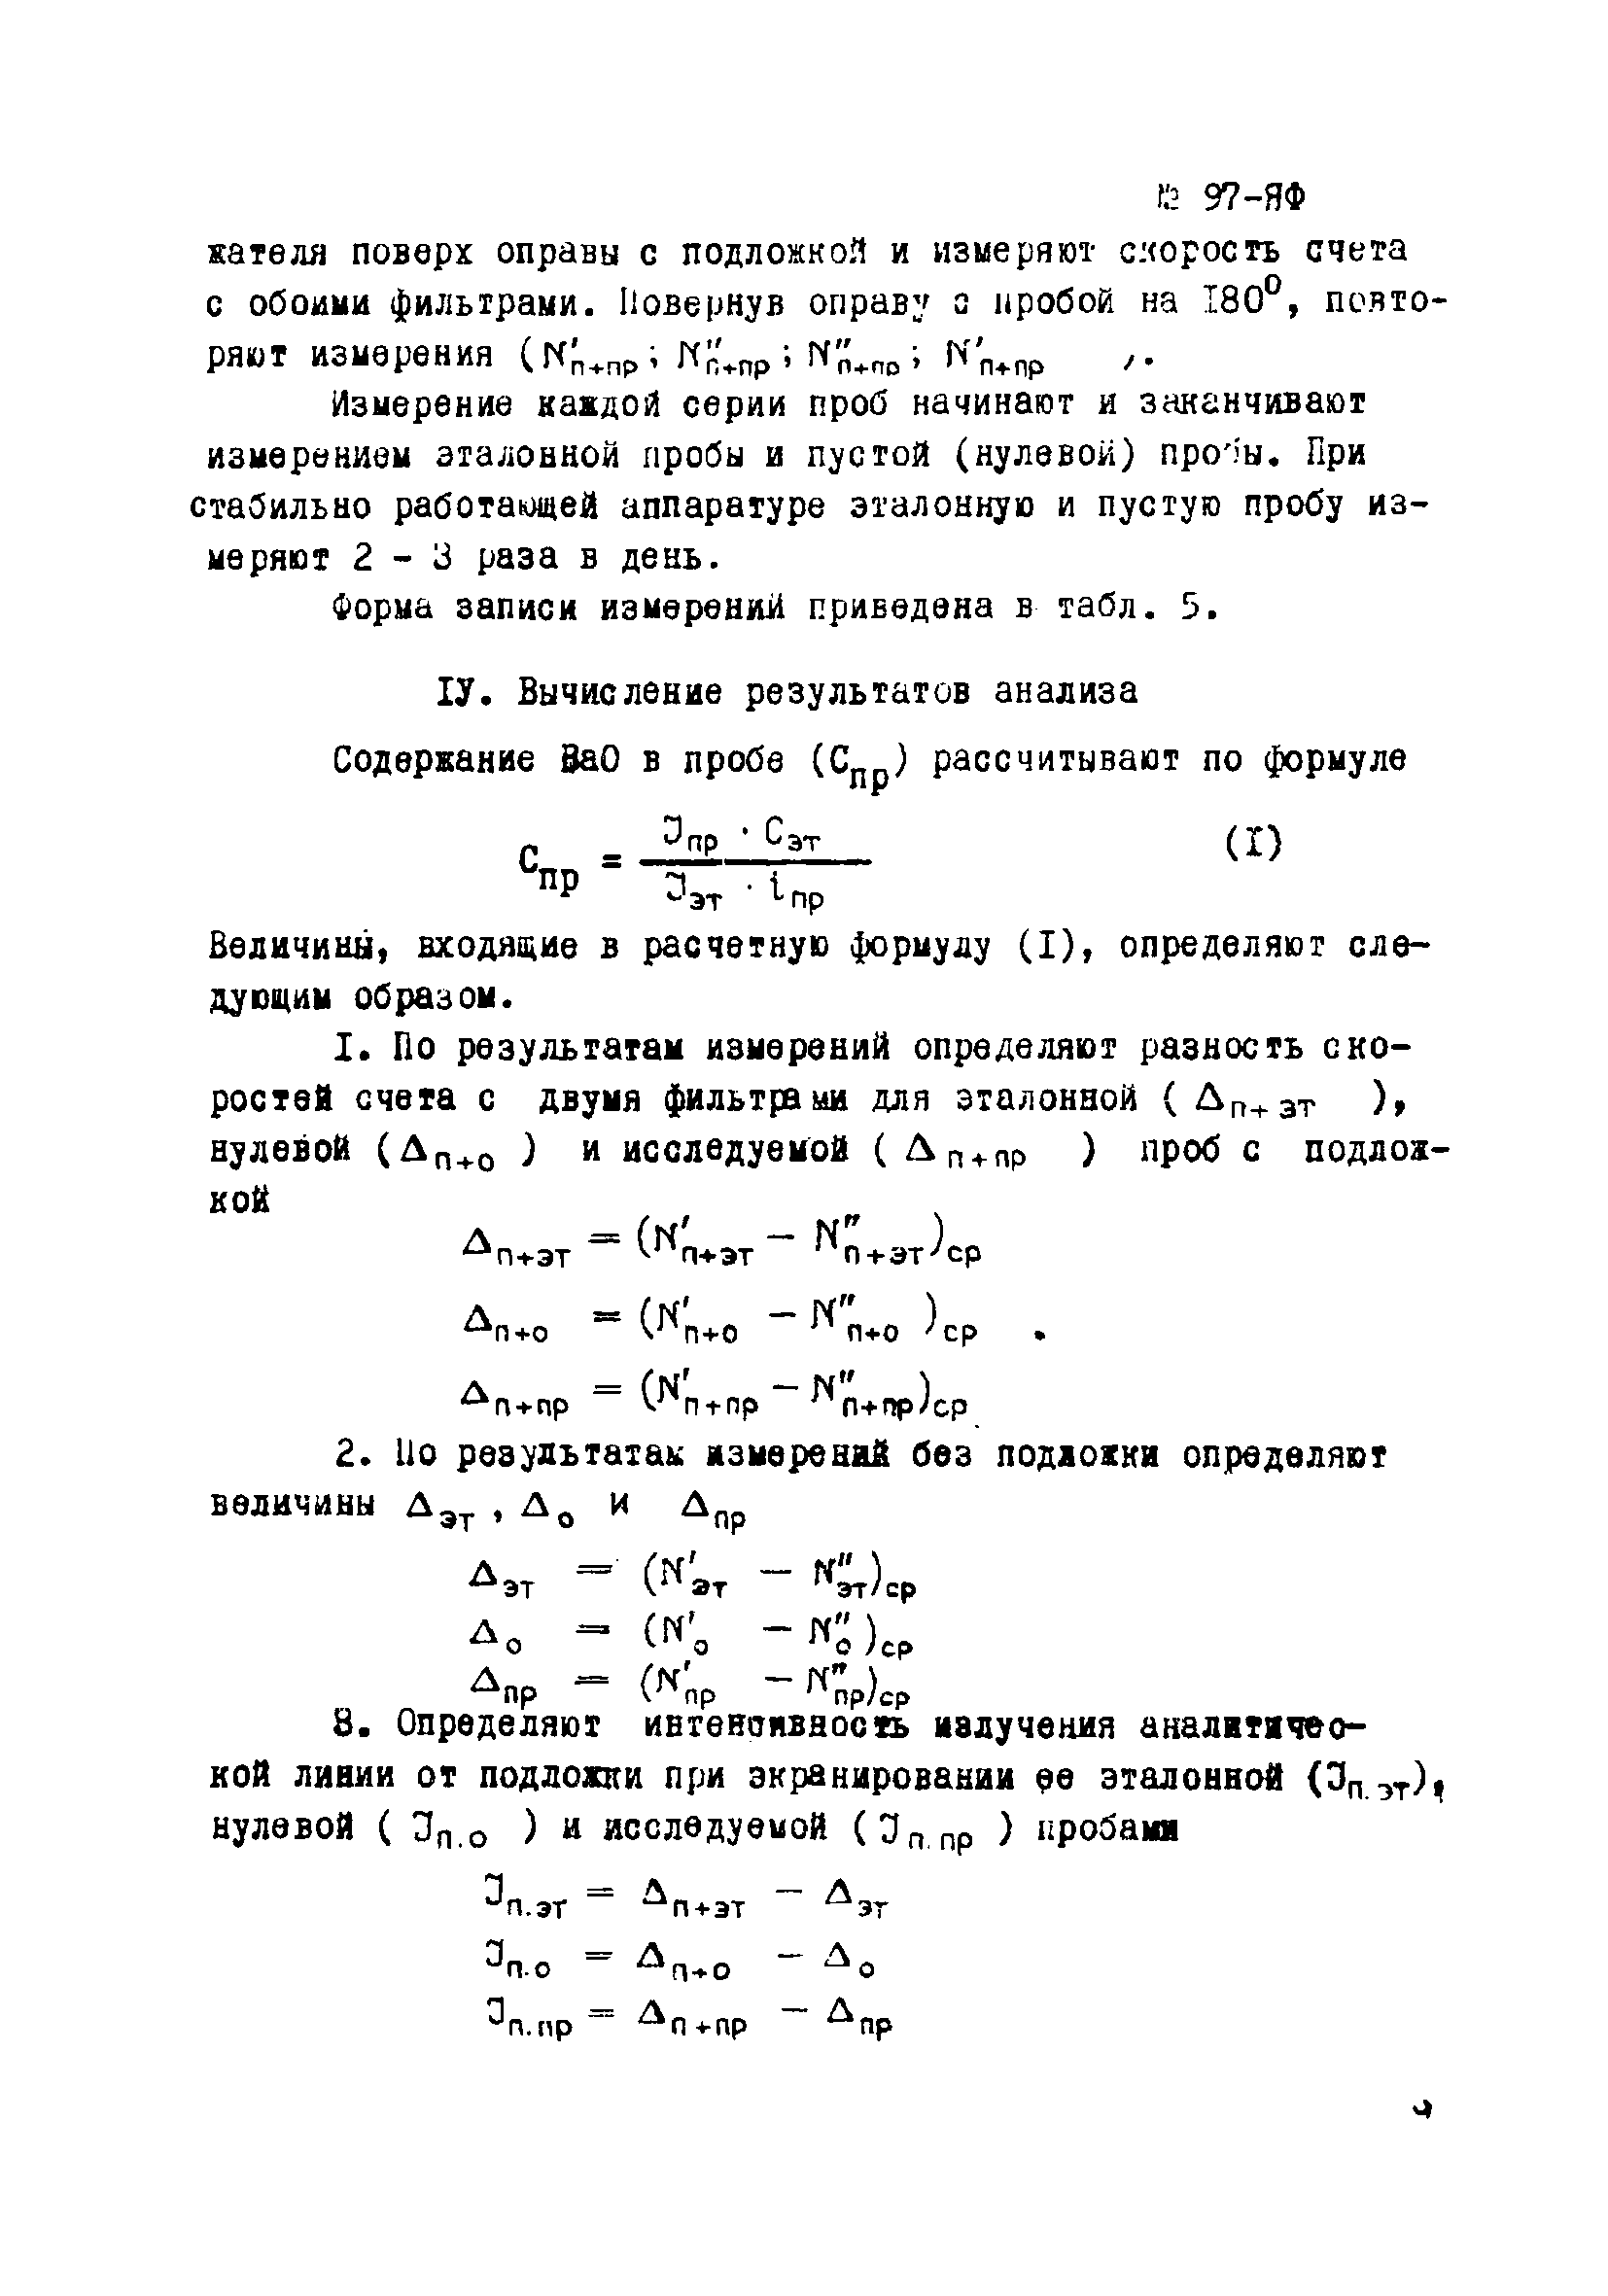 Инструкция НСАМ 97-ЯФ